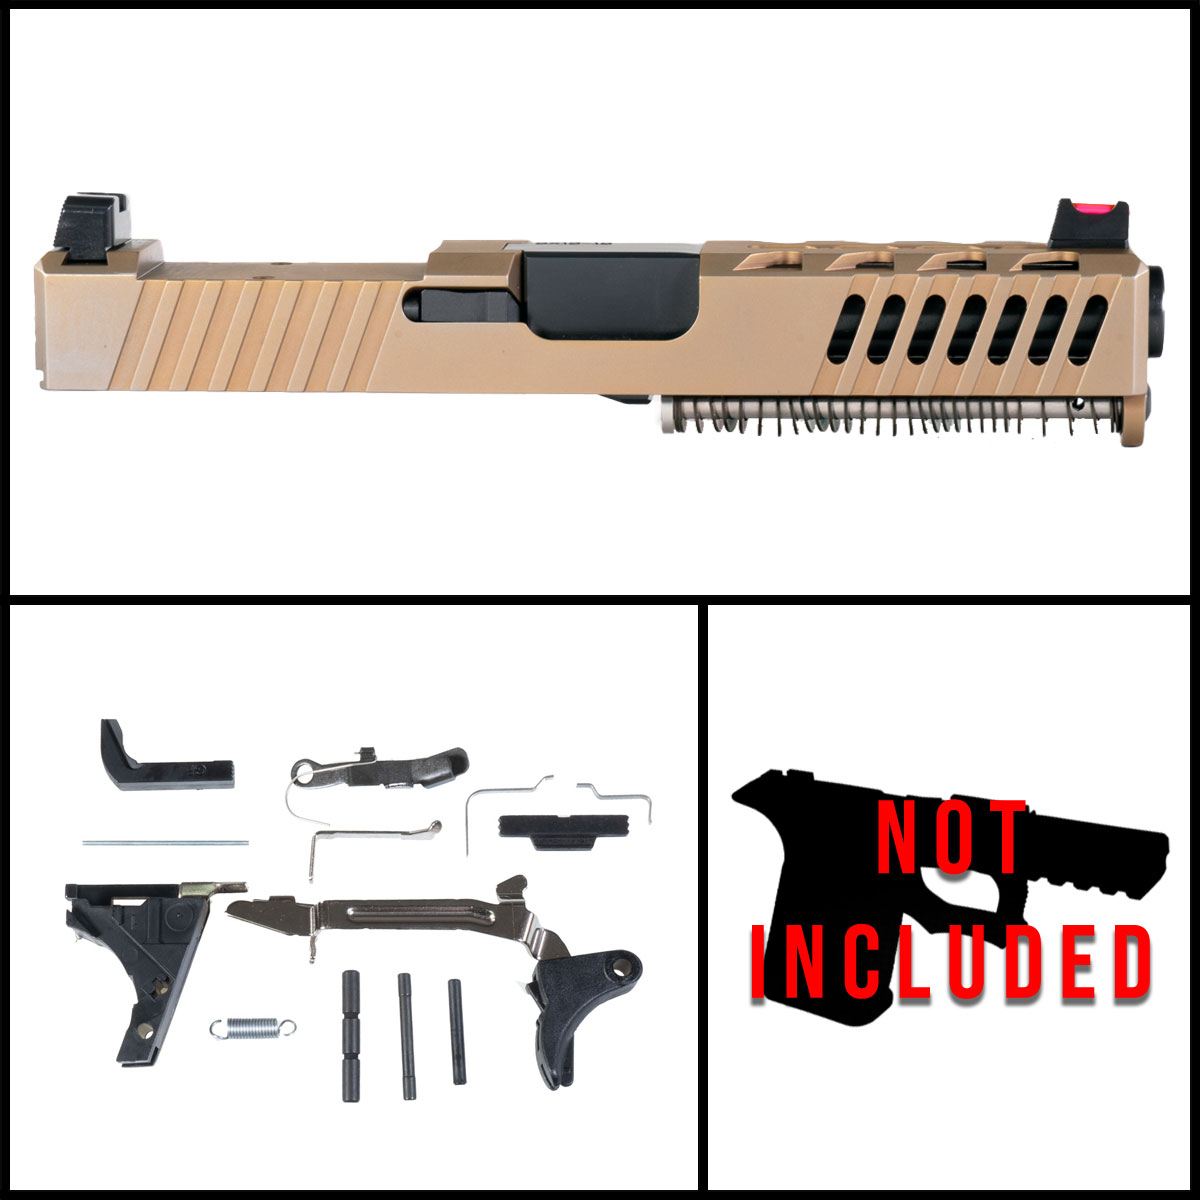 DD '2833K' 9mm Full Pistol Build Kit (Everything Minus Frame) - Glock 19 Compatible